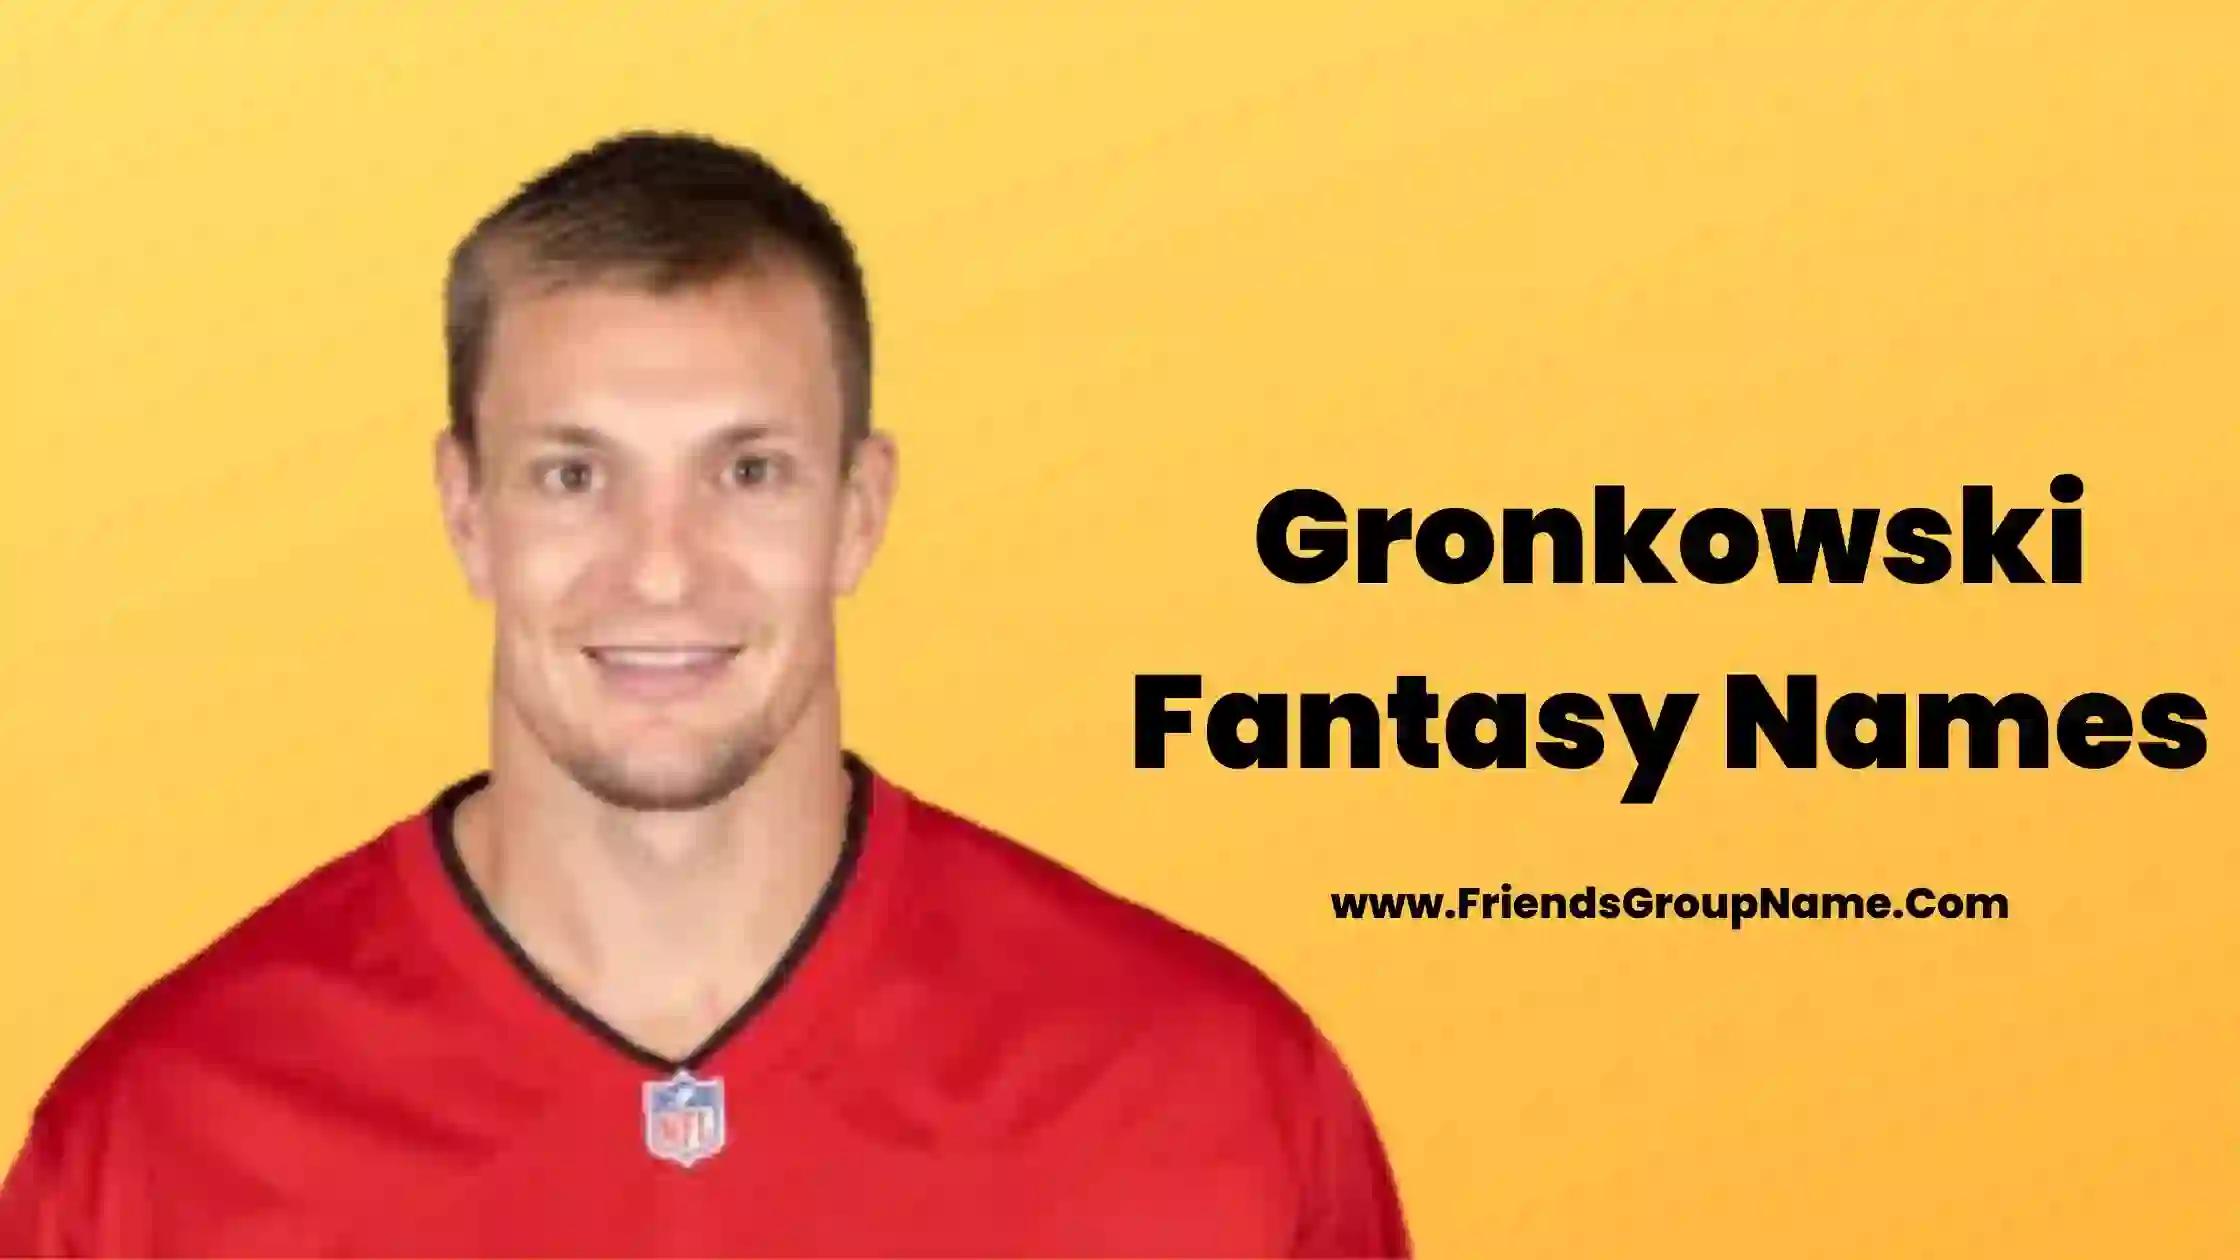 Gronkowski Fantasy Names